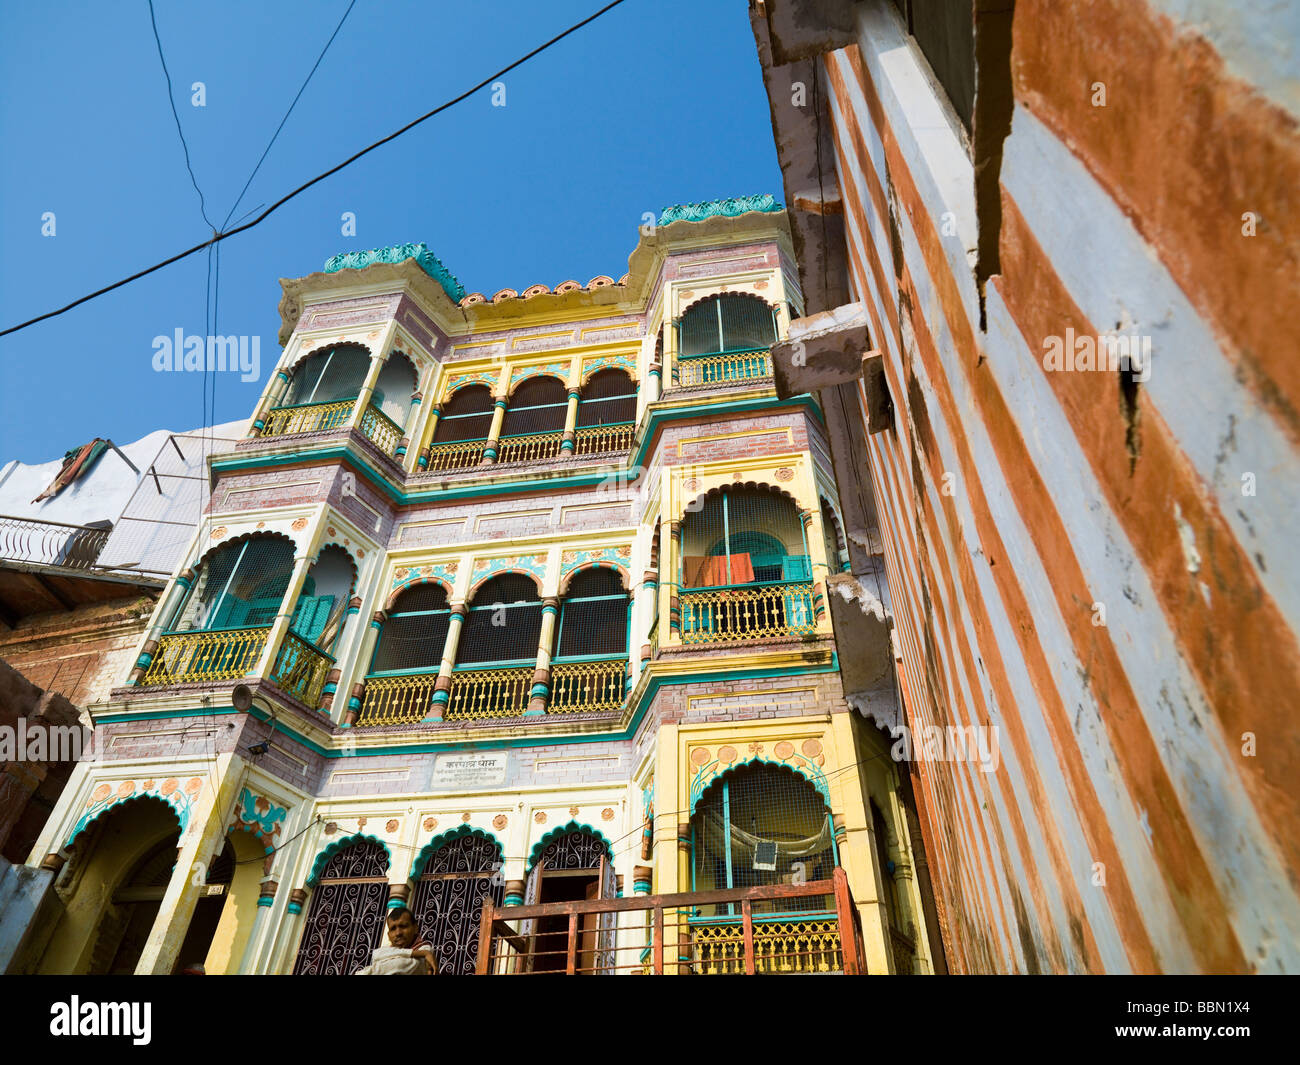 Varanasi, Inde;immeubles colorés dynamiques Banque D'Images